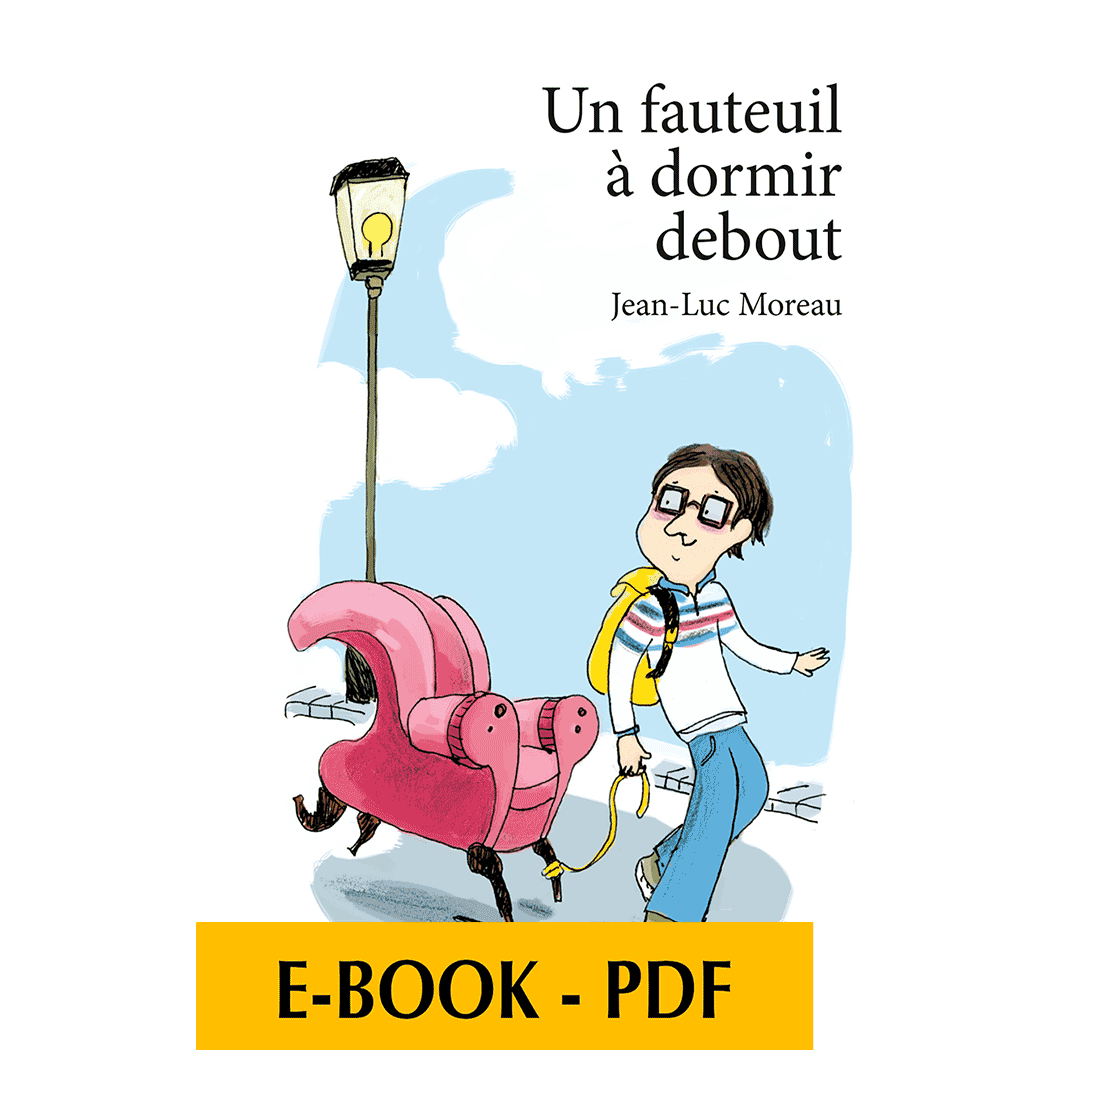 Un fauteuil à dormir debout - E-book PDF